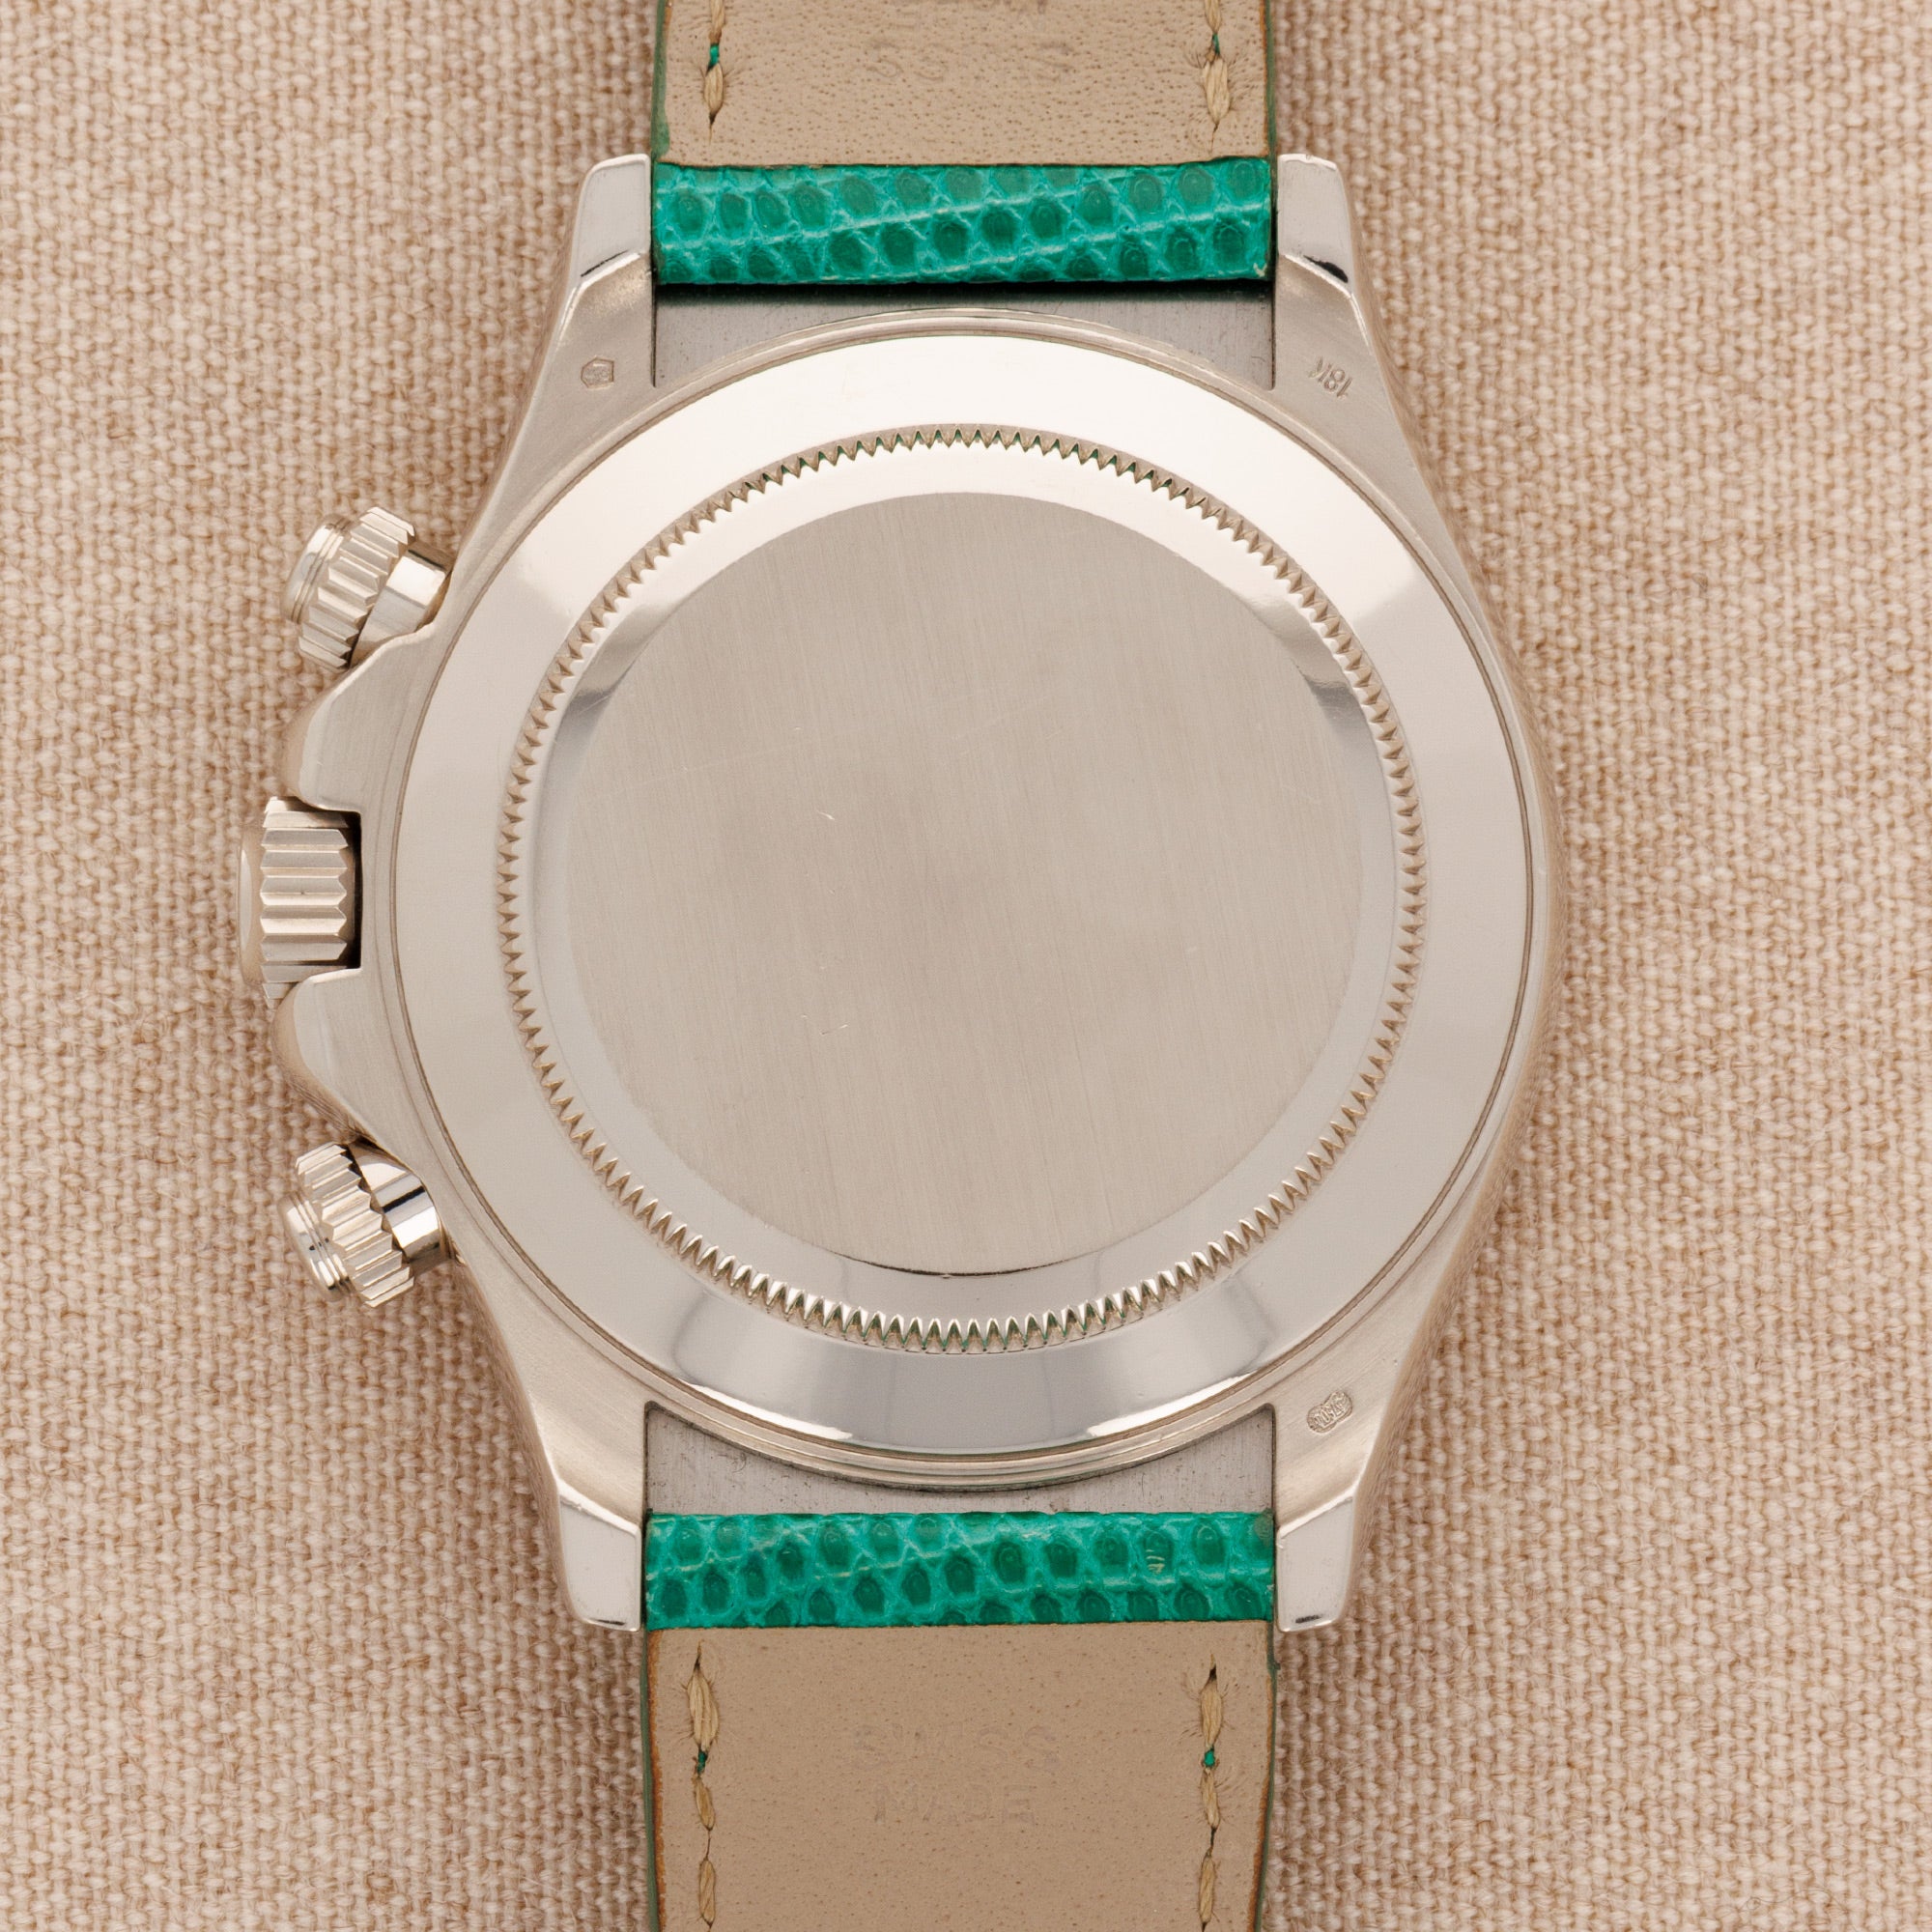 Rolex - Rolex White Gold Daytona Green Beach Watch Ref. 116519 - The Keystone Watches